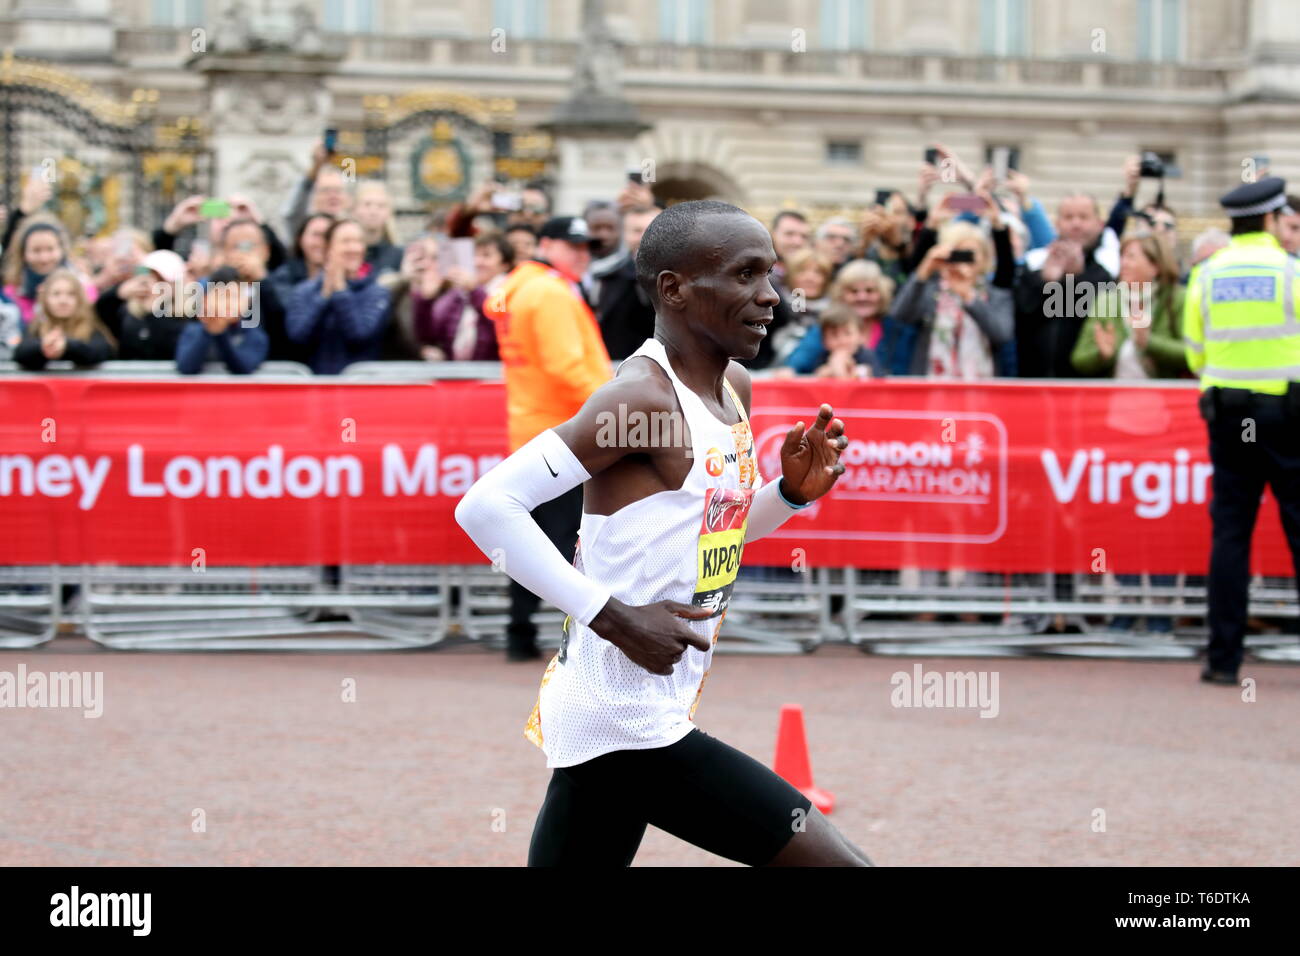 La Vierge, le Marathon de Londres 2019 men's winner Eliud Kipchoge du Kenya, dans la phase finale devant le palais de Buckingham. Banque D'Images